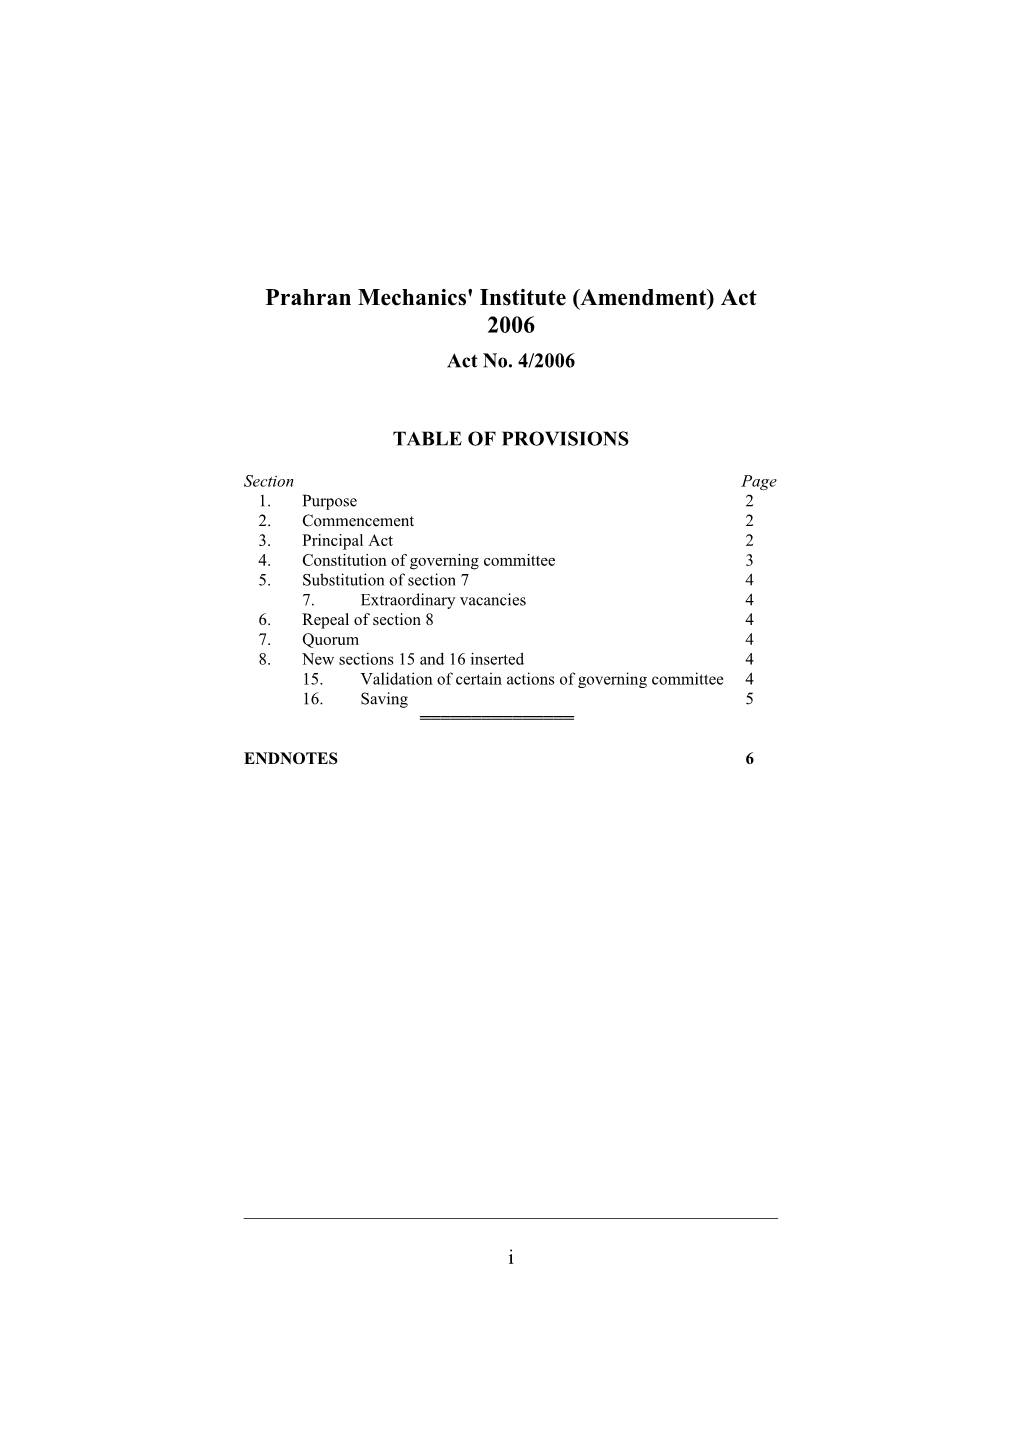 Prahran Mechanics' Institute (Amendment) Act 2006